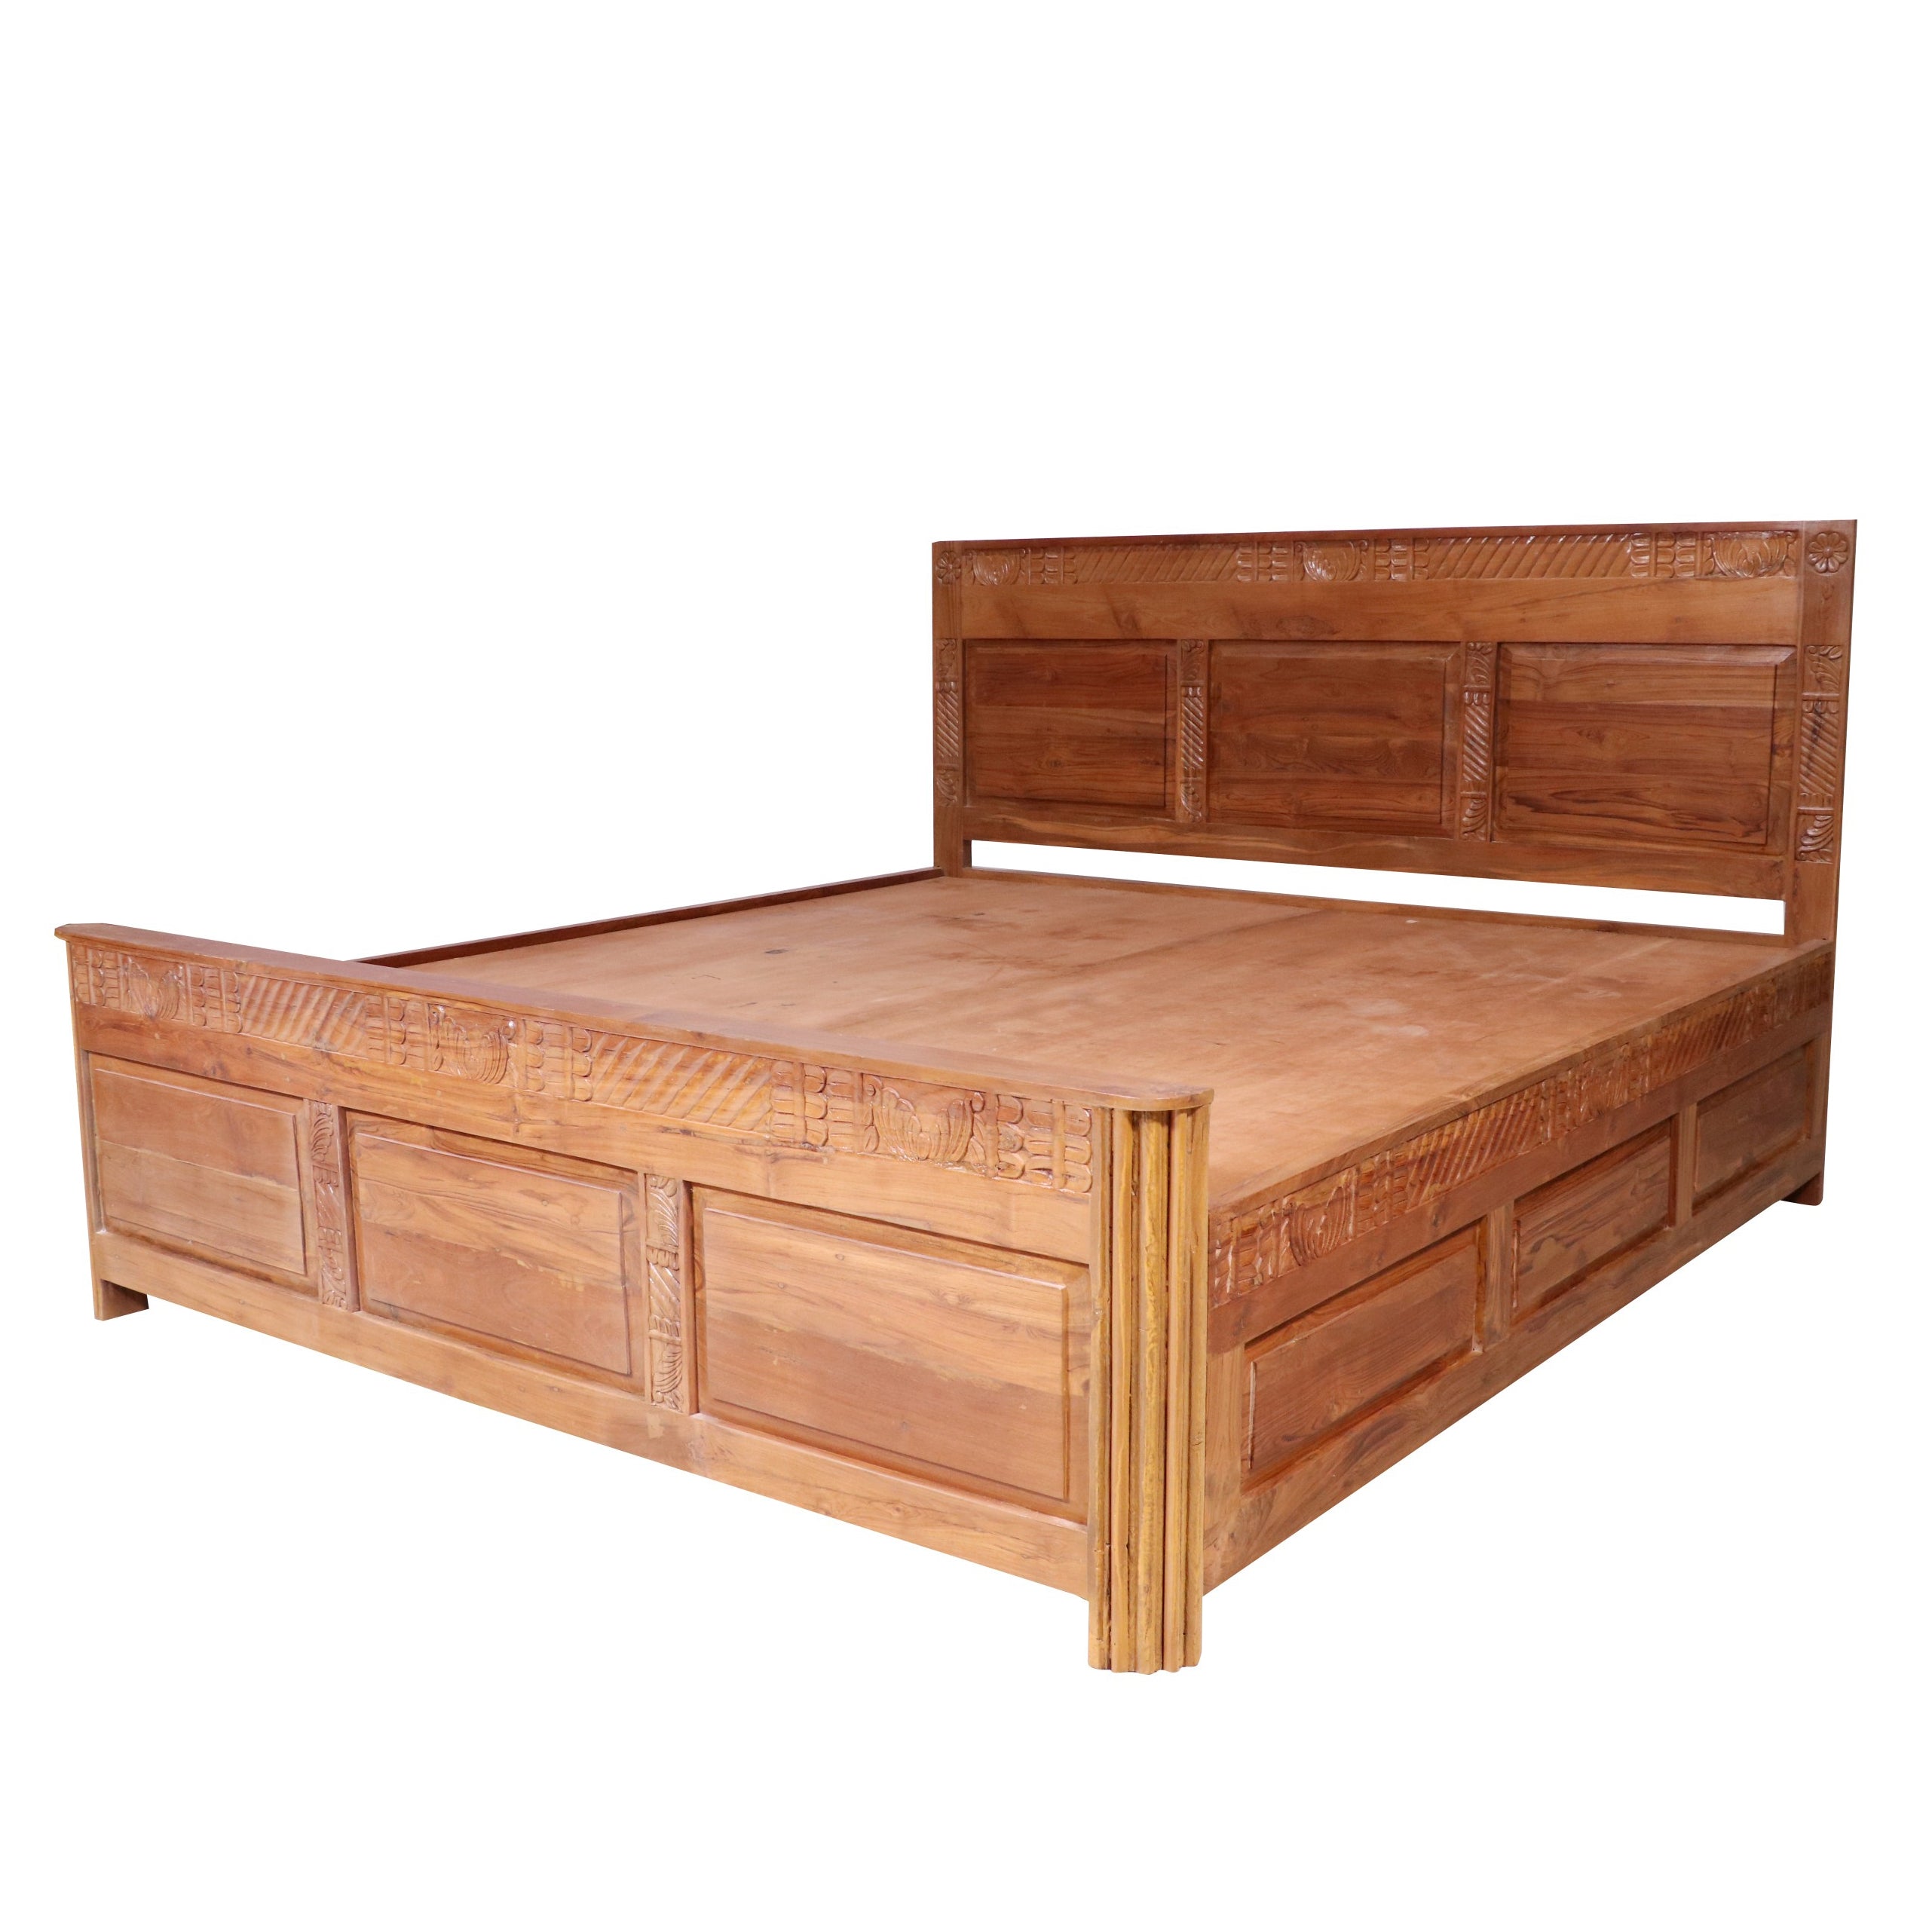 Teak wood carved Folk Concept Bed Bed